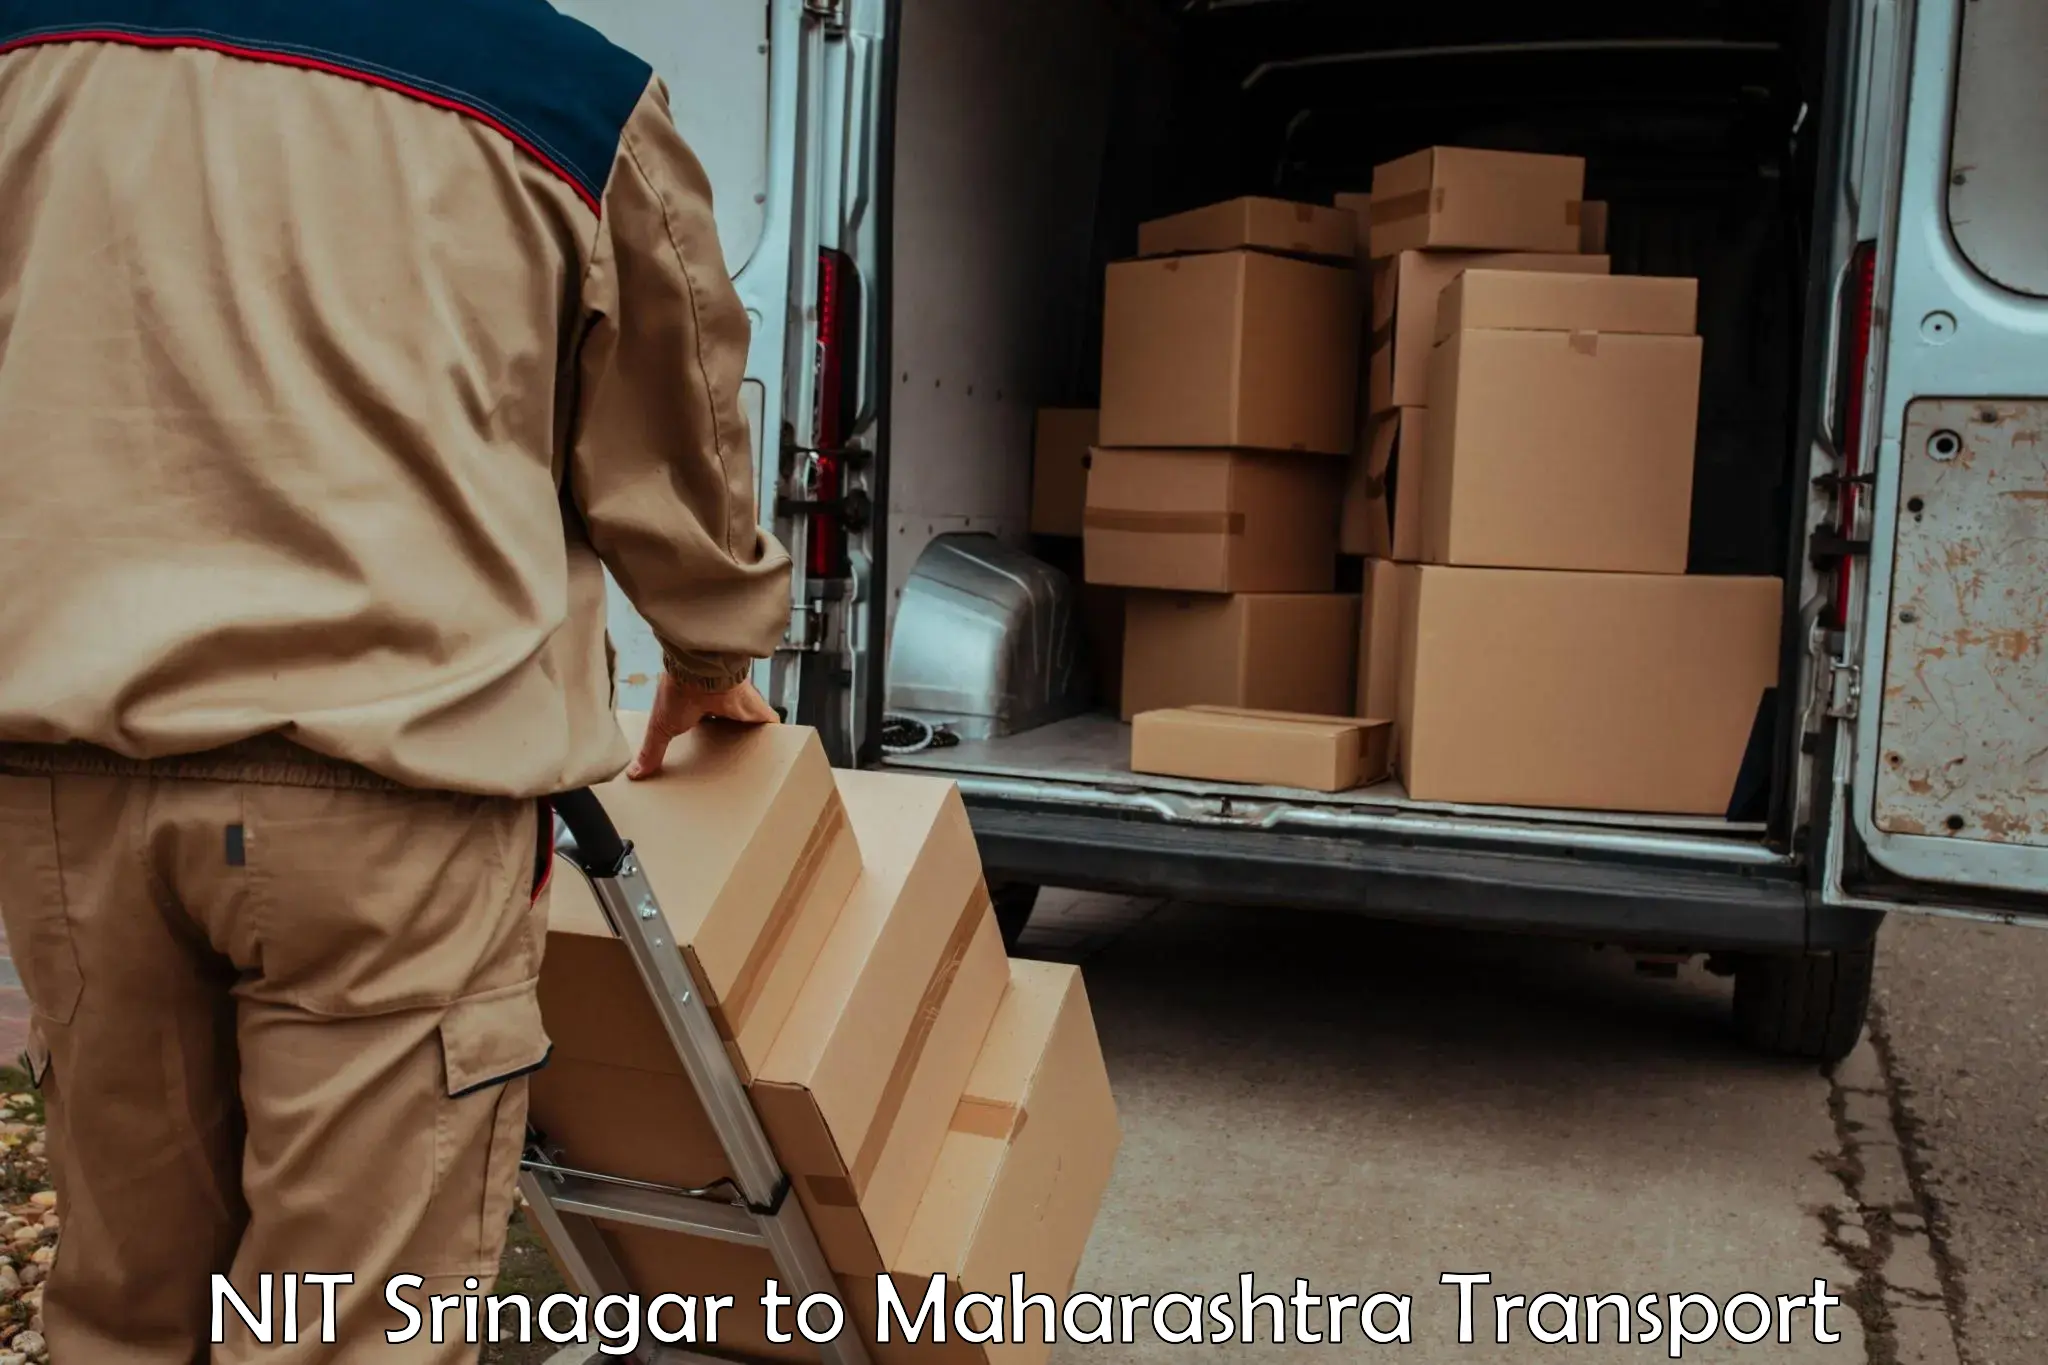 Cargo transport services NIT Srinagar to Mehkar